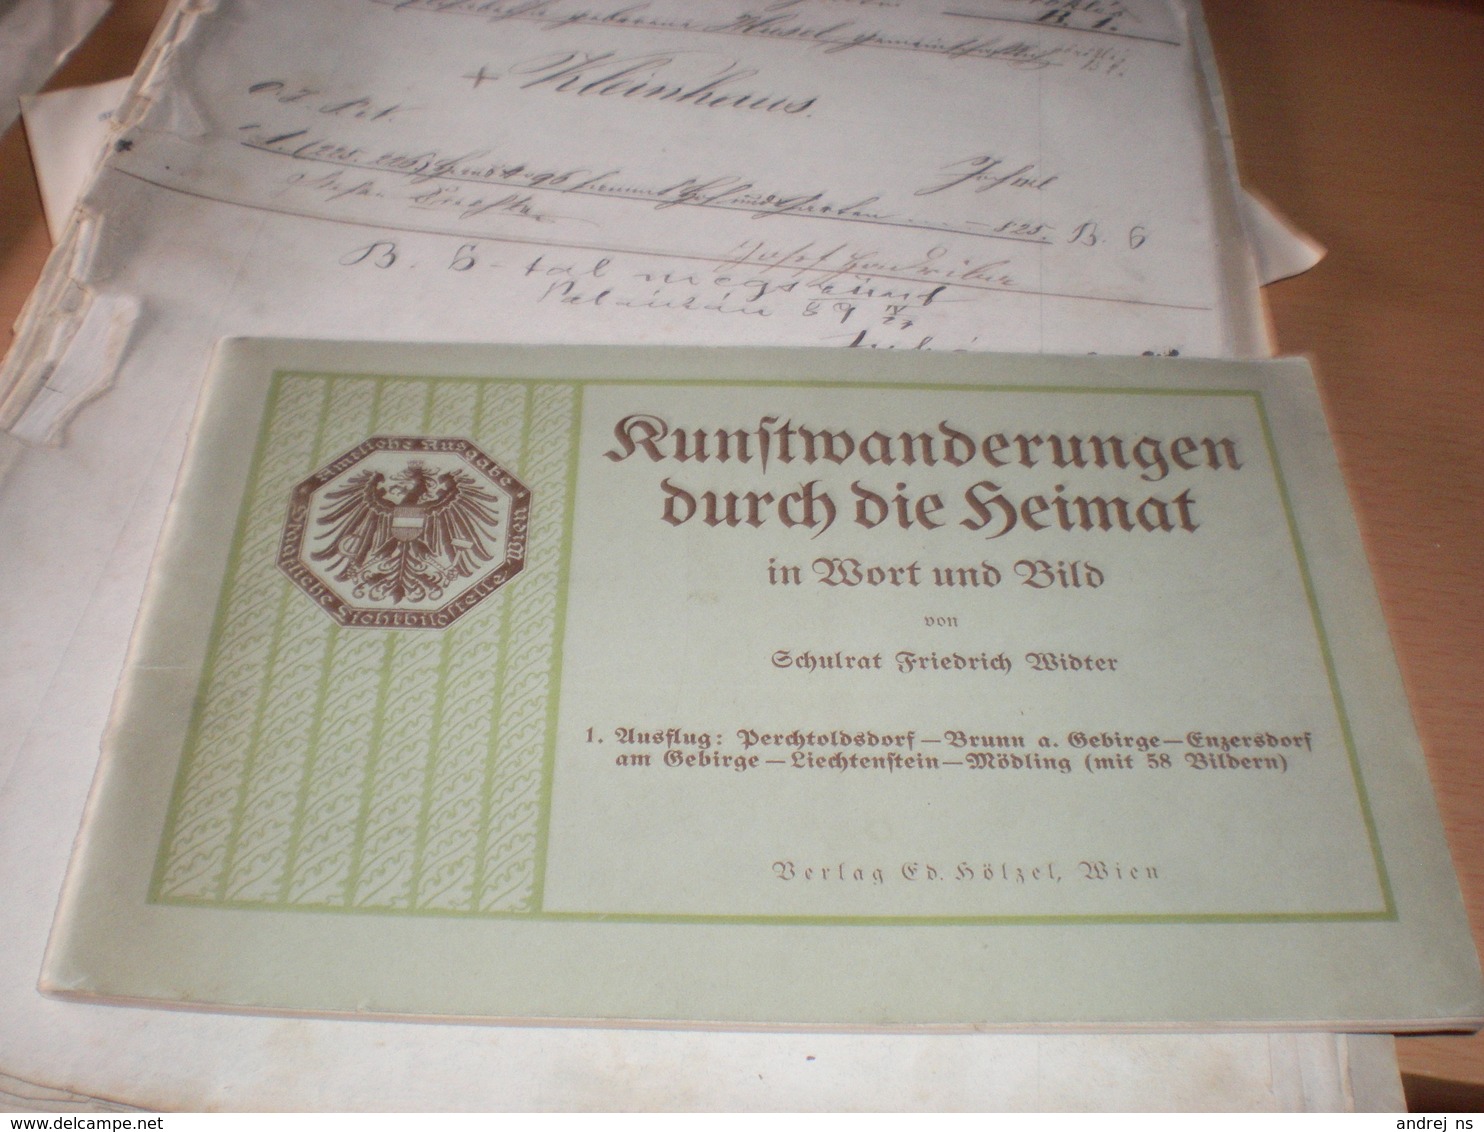 Wien Runftwanderungen Durch Die Seimat In Wort Und Bild  55 Pages - Old Books